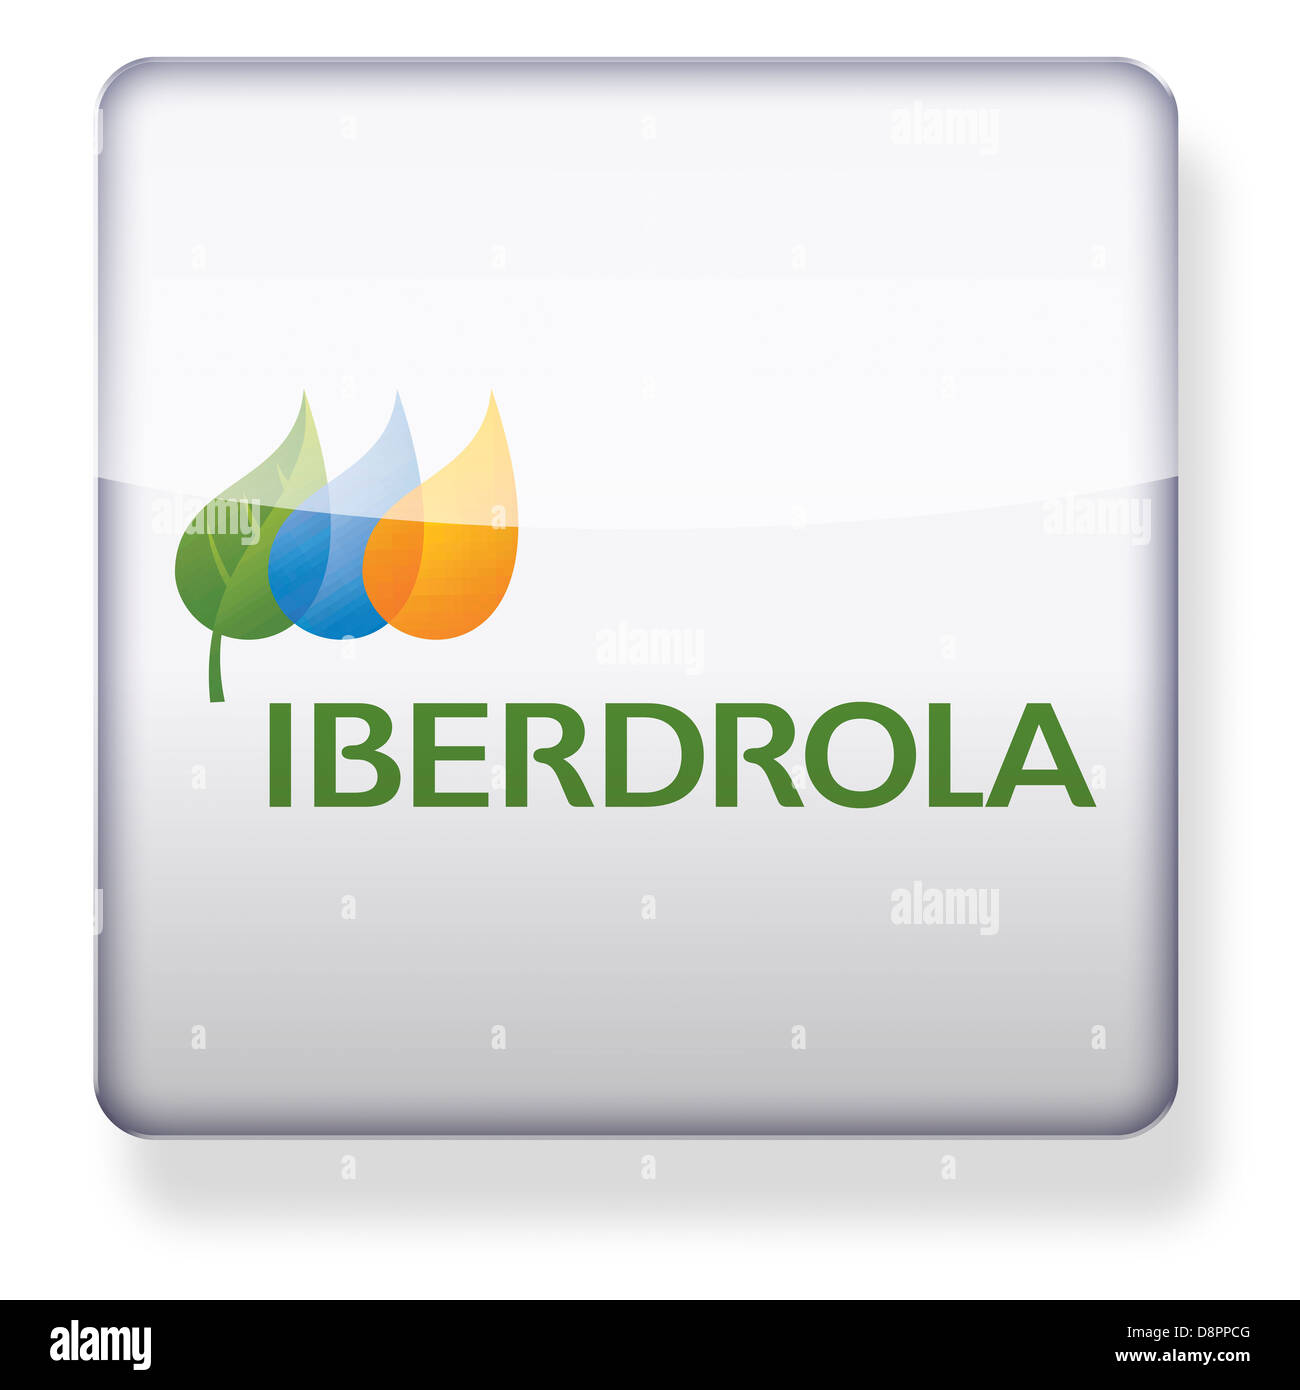 Logo Iberdrola comme une icône de l'application. Chemin de détourage inclus. Banque D'Images